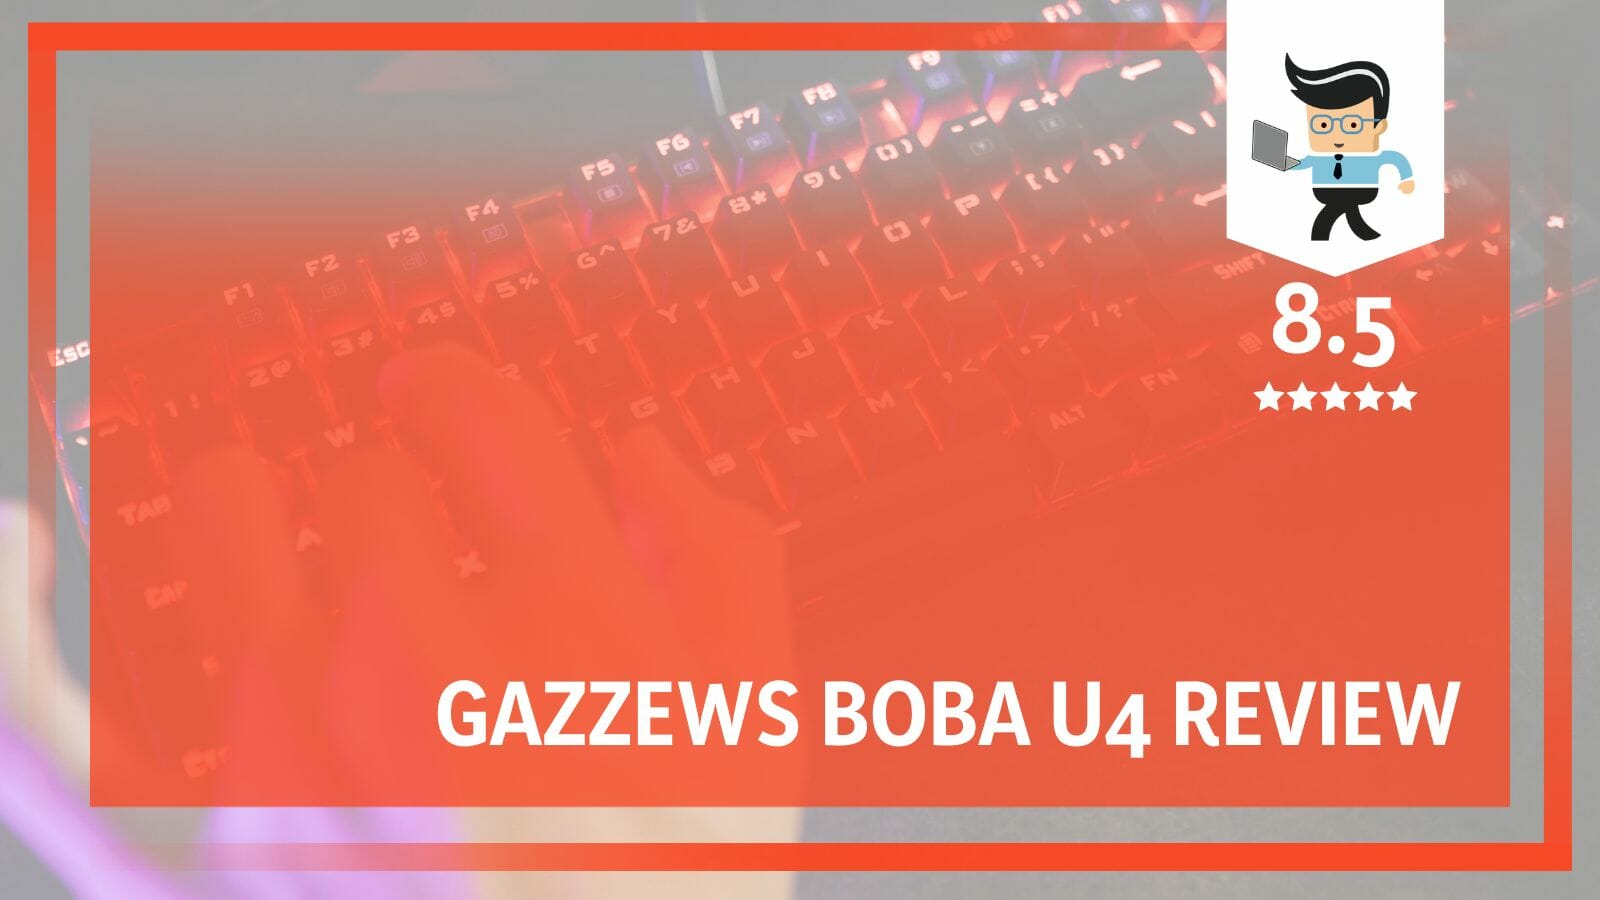 Gazzews Boba U4 Review image